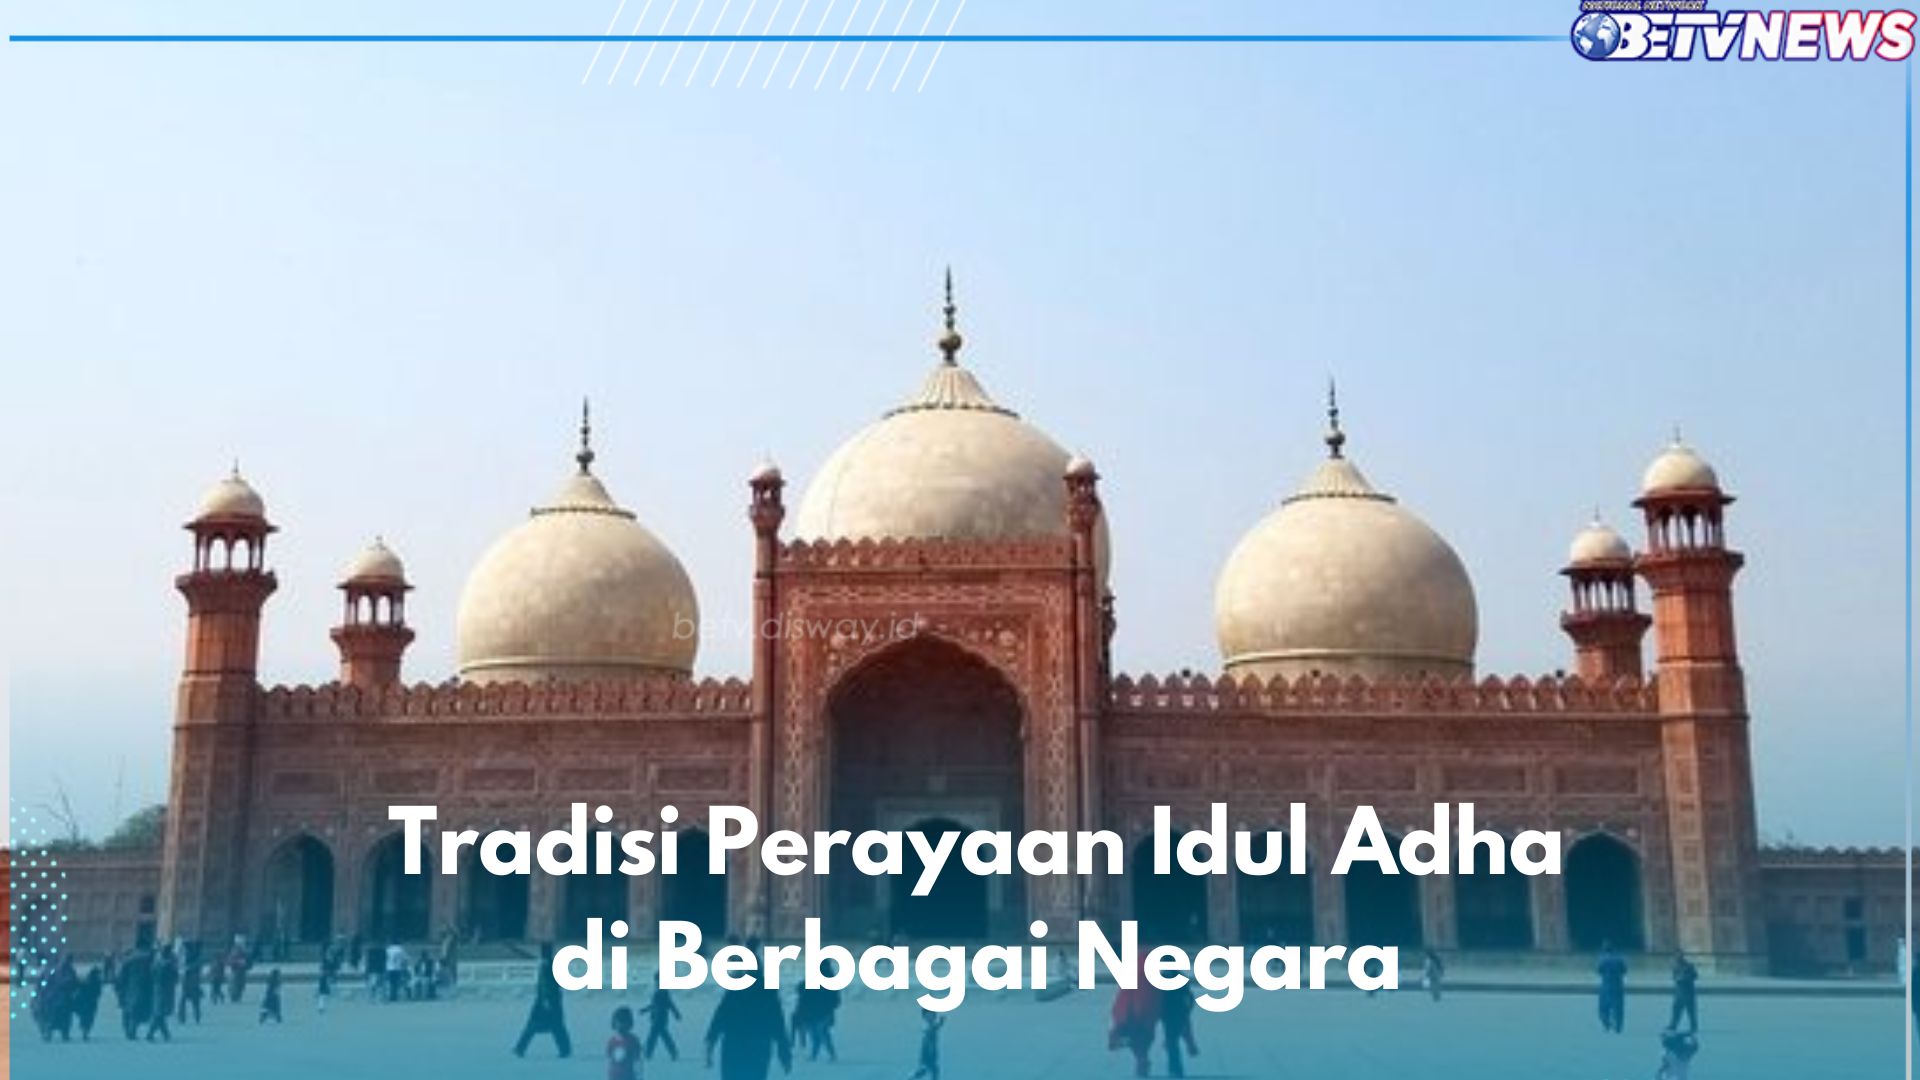 Mengenal 7 Tradisi Perayaan Idul Adha di Berbagai Negara, Salah Satunya Ritual Pesta Kurban